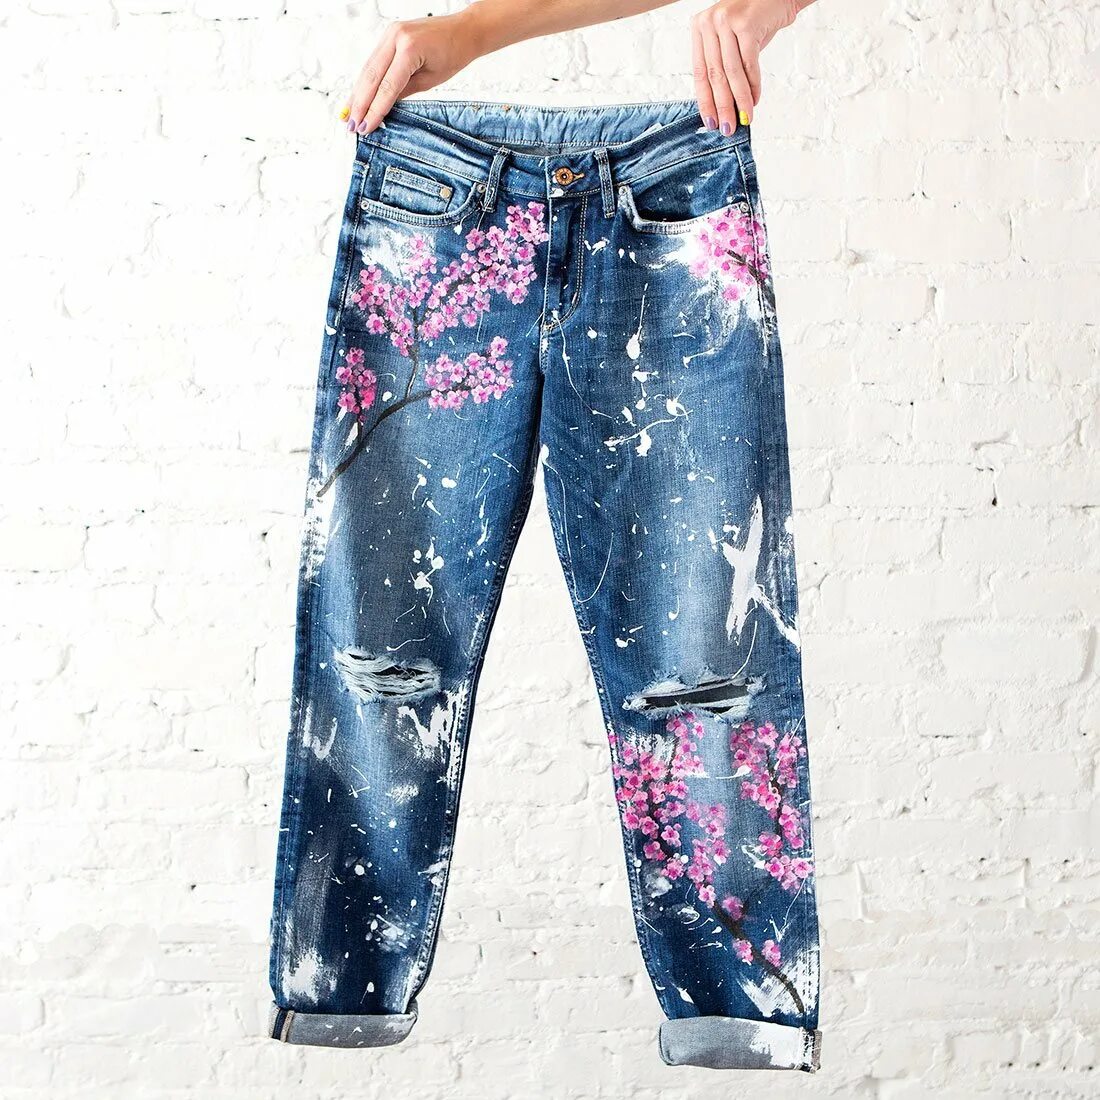 Разрисованные джинсы. Джинсы декорированные. Разукрашенные джинсы. Расписные джинсы.